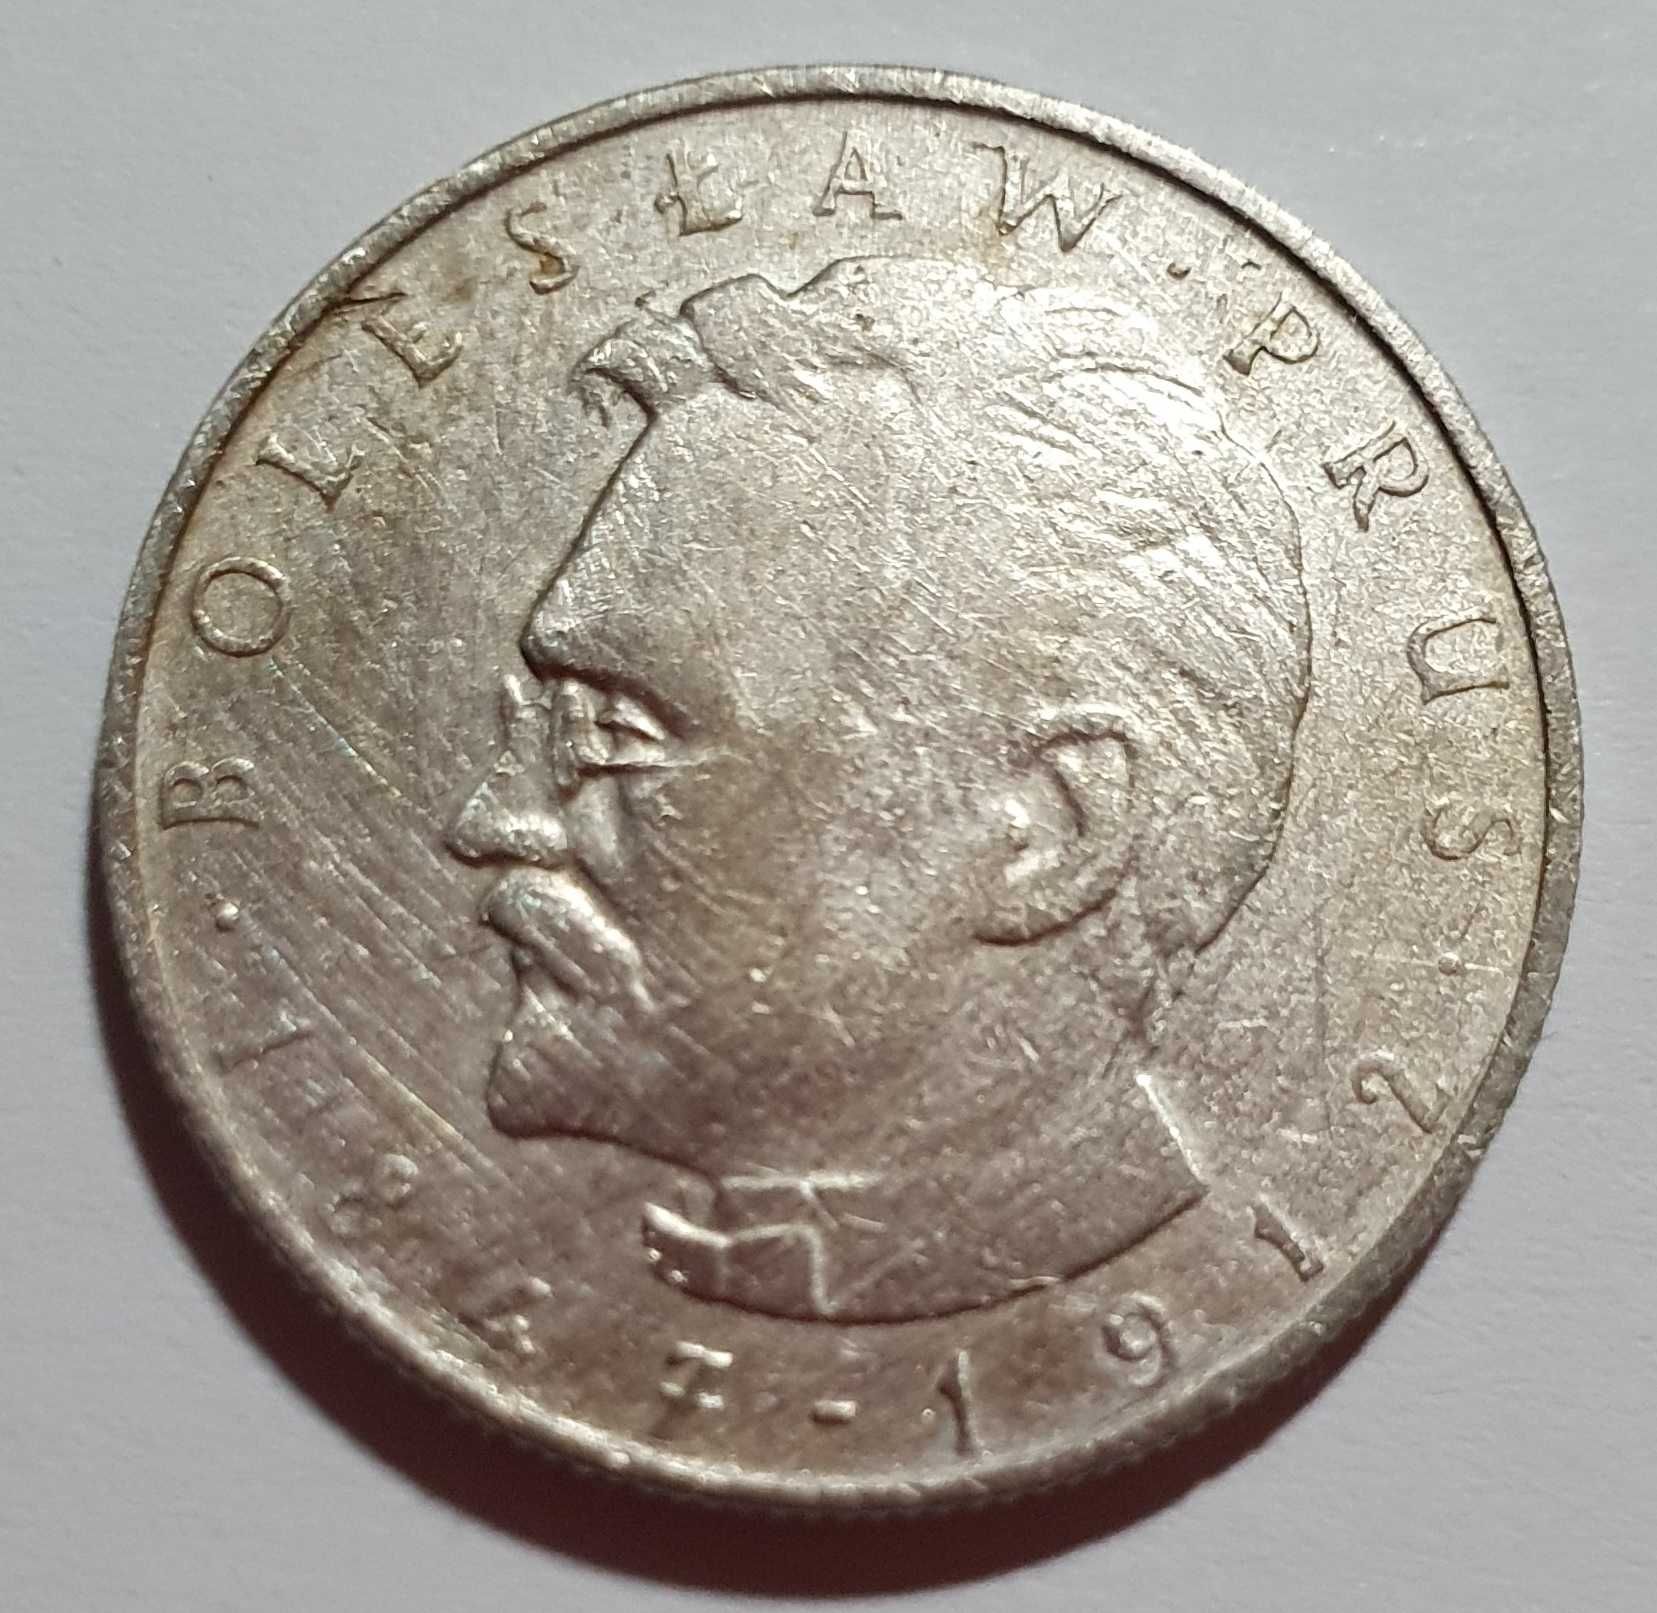 Monety 4 szt. 50 zł oraz 1 szt. 10 zł – lata: 1975, 1979, 1980, 1981